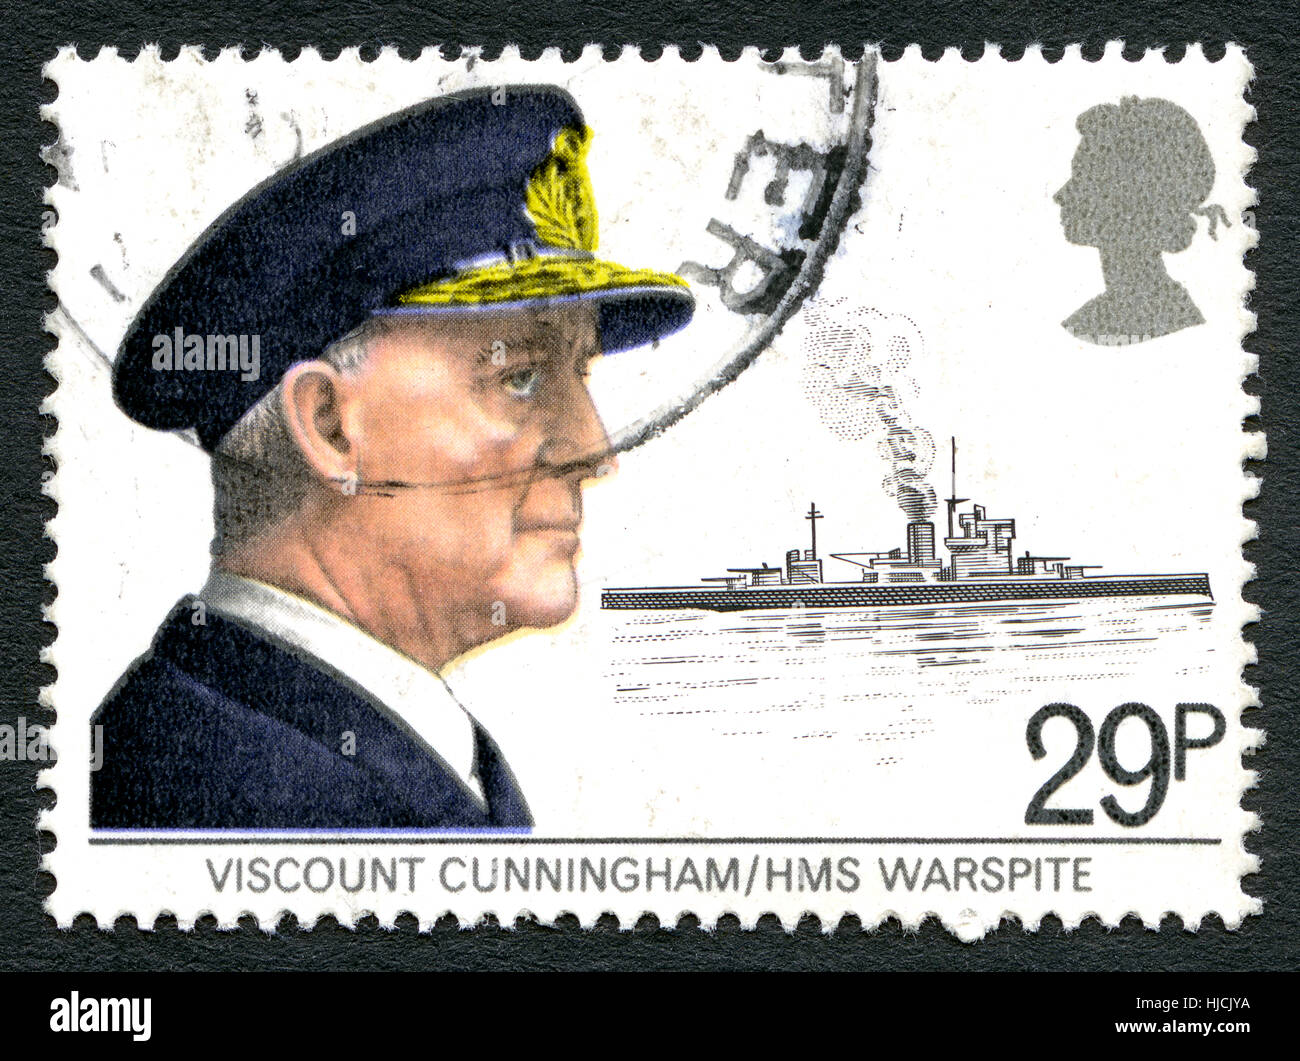 Großbritannien - CIRCA 1982: Eine gebrauchte Briefmarke aus dem Vereinigten Königreich, zeigt ein Porträt des Viscount Cunningham und HMS Warspite, ca. 1982. Stockfoto